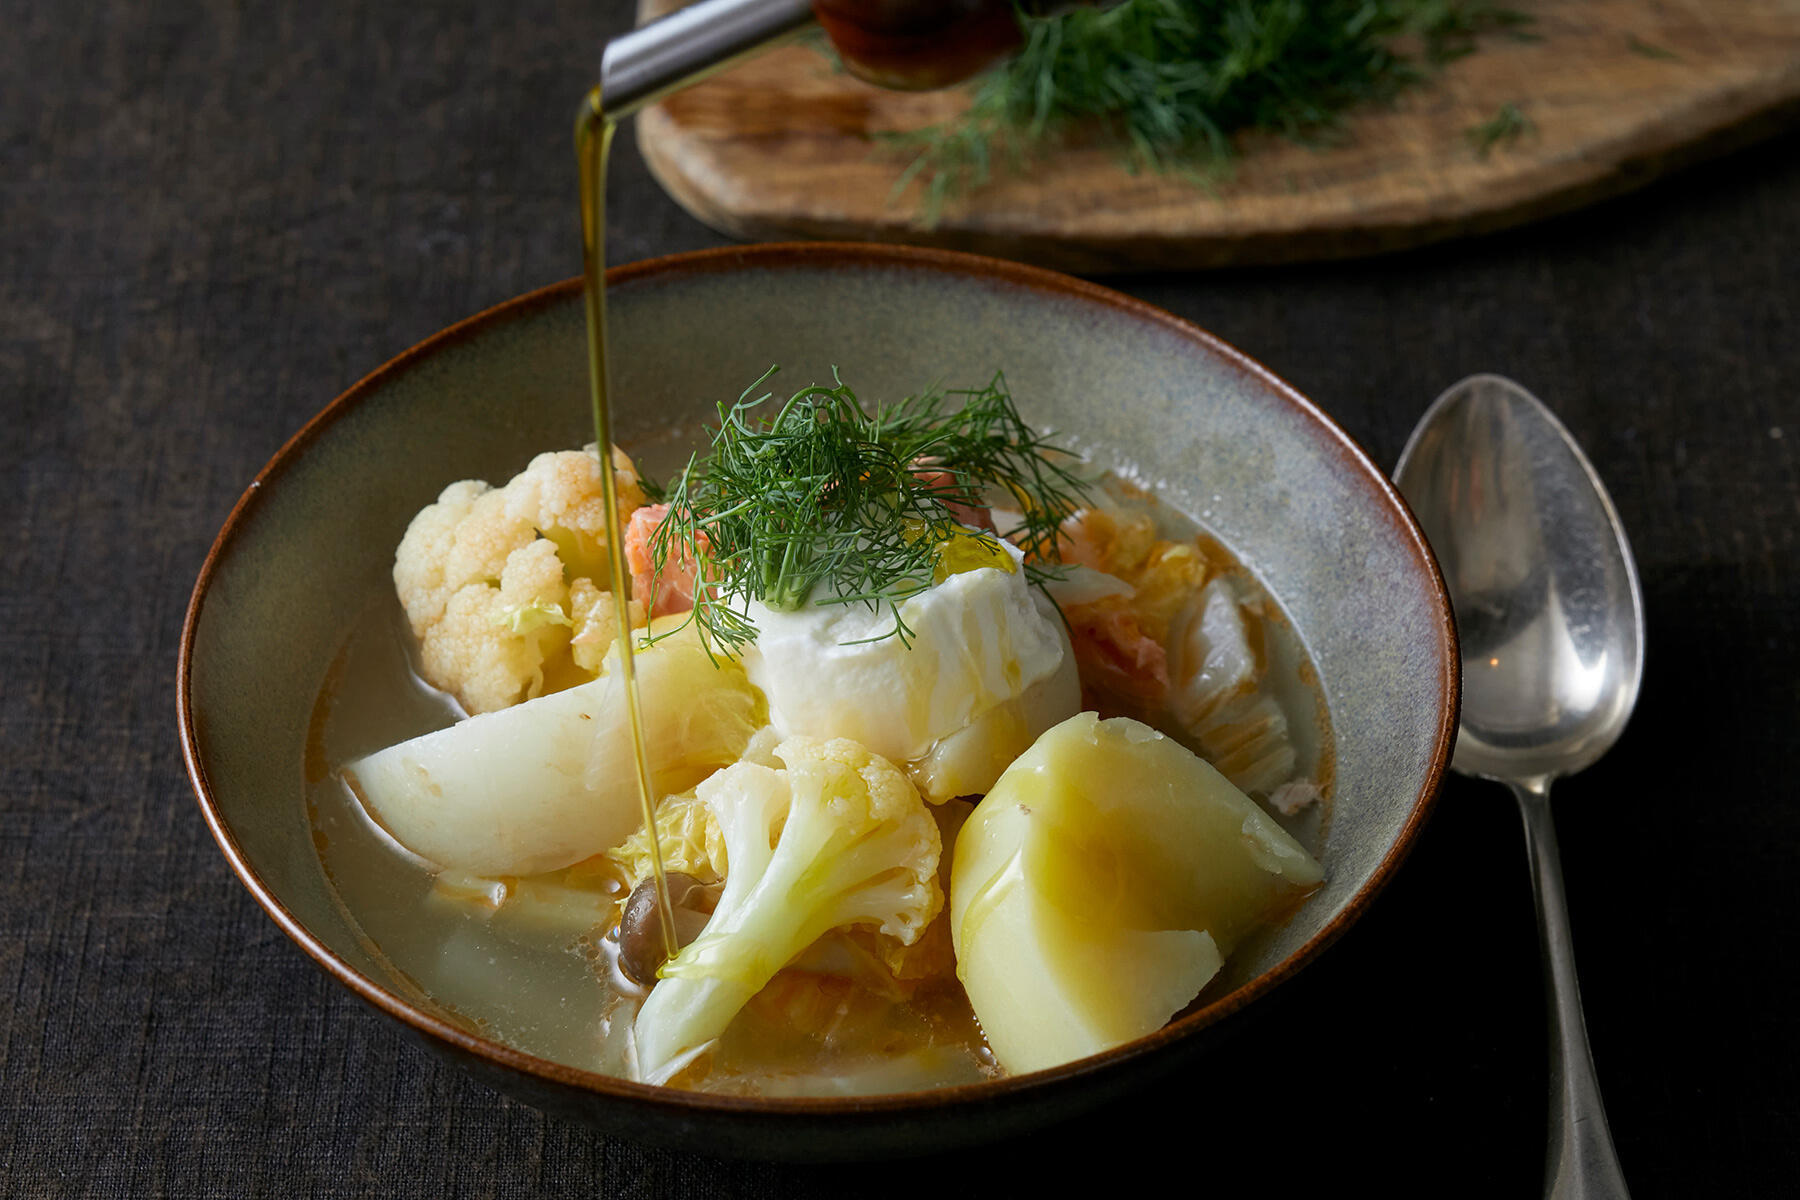 冬野菜の旨味が凝縮した 北欧鍋 冬の新定番料理 今日 なにつくる 公式 Dancyu ダンチュウ